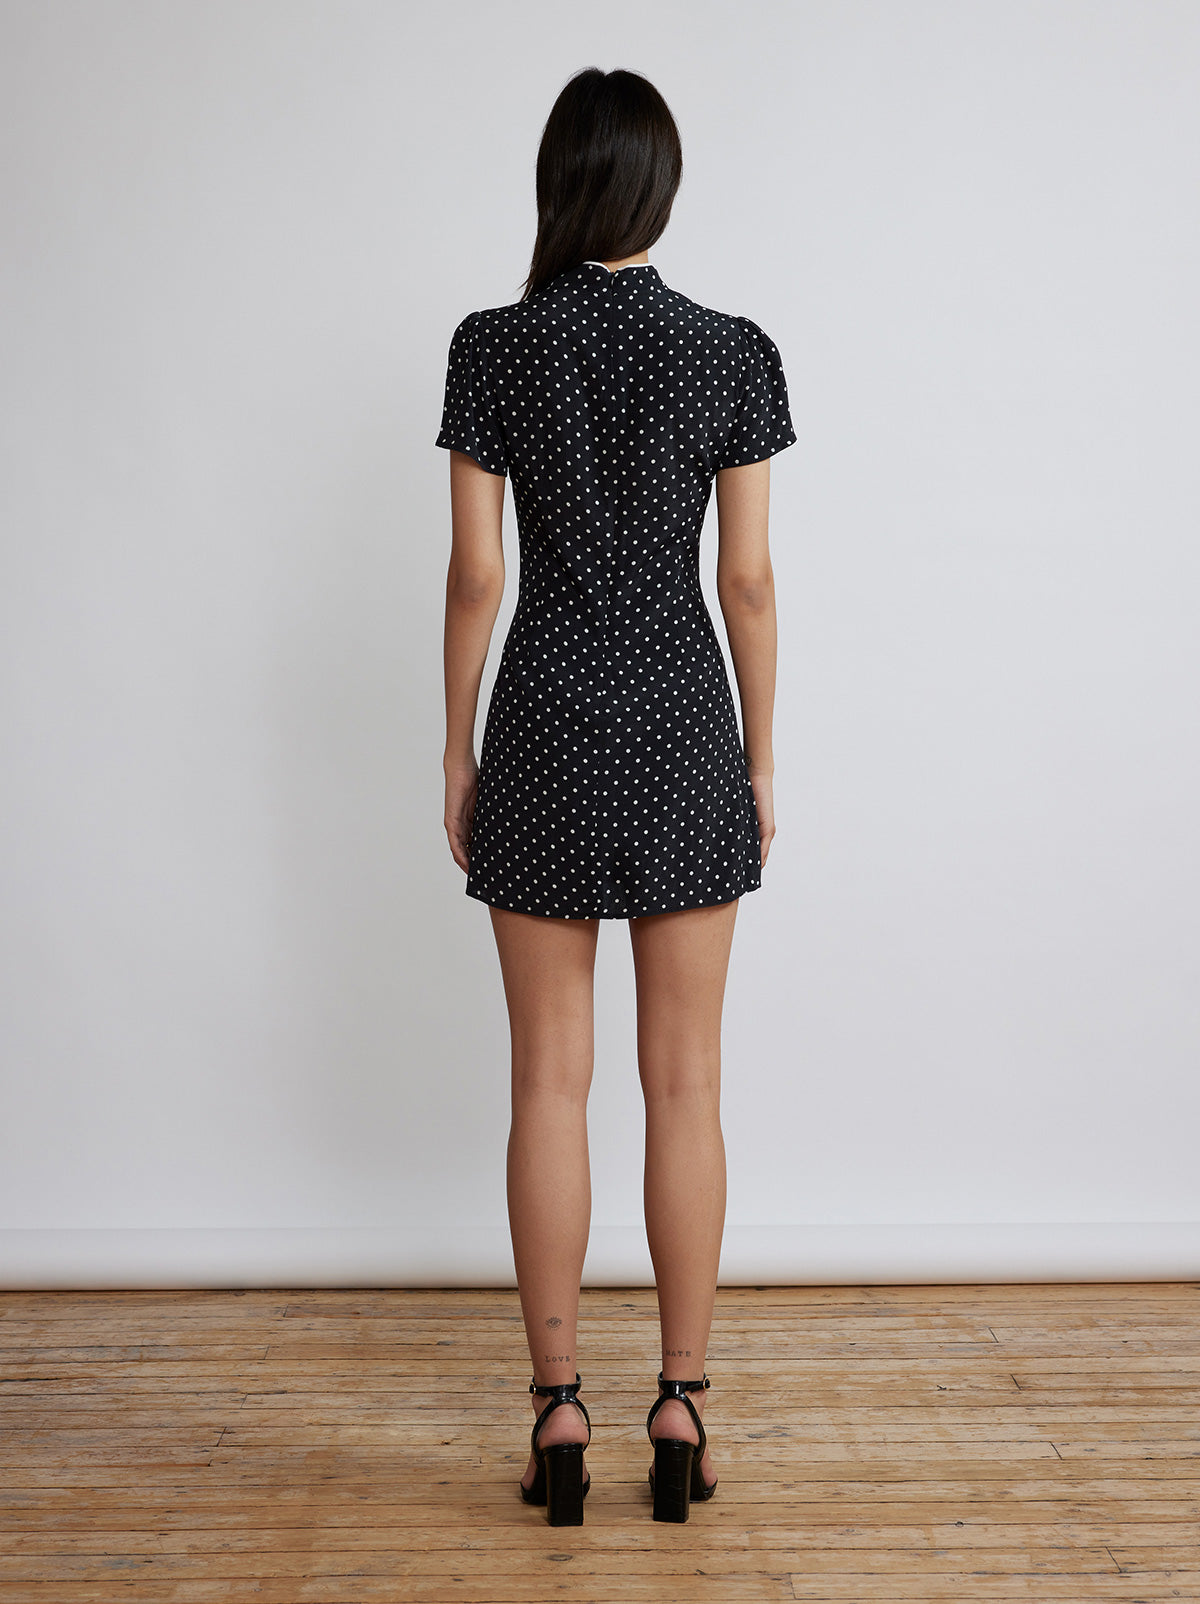 Harlow Black Polka Dot Mini Dress By KITRI Studio